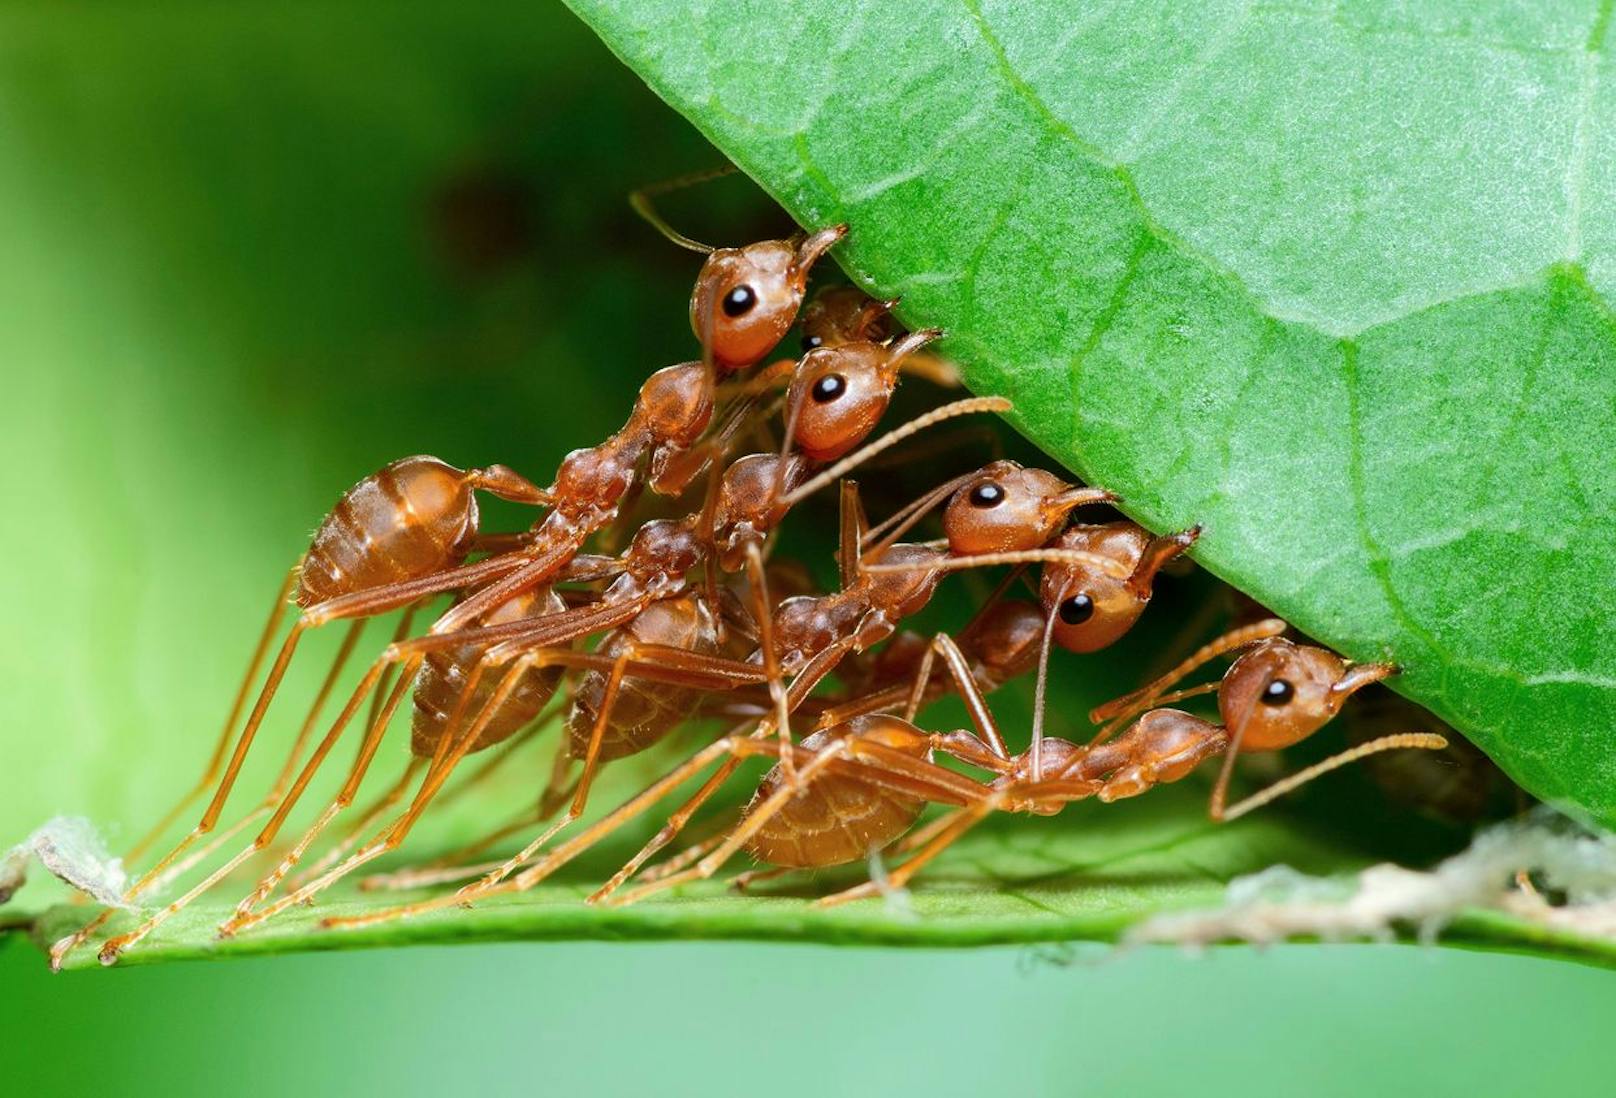 "Besonders konzentrieren wir uns auf den bemerkenswerten Selbstheilungsprozess von Ameisen und die unbestreitbare Notwendigkeit artenreicher Wälder für unser Ökosystem", heißt es.